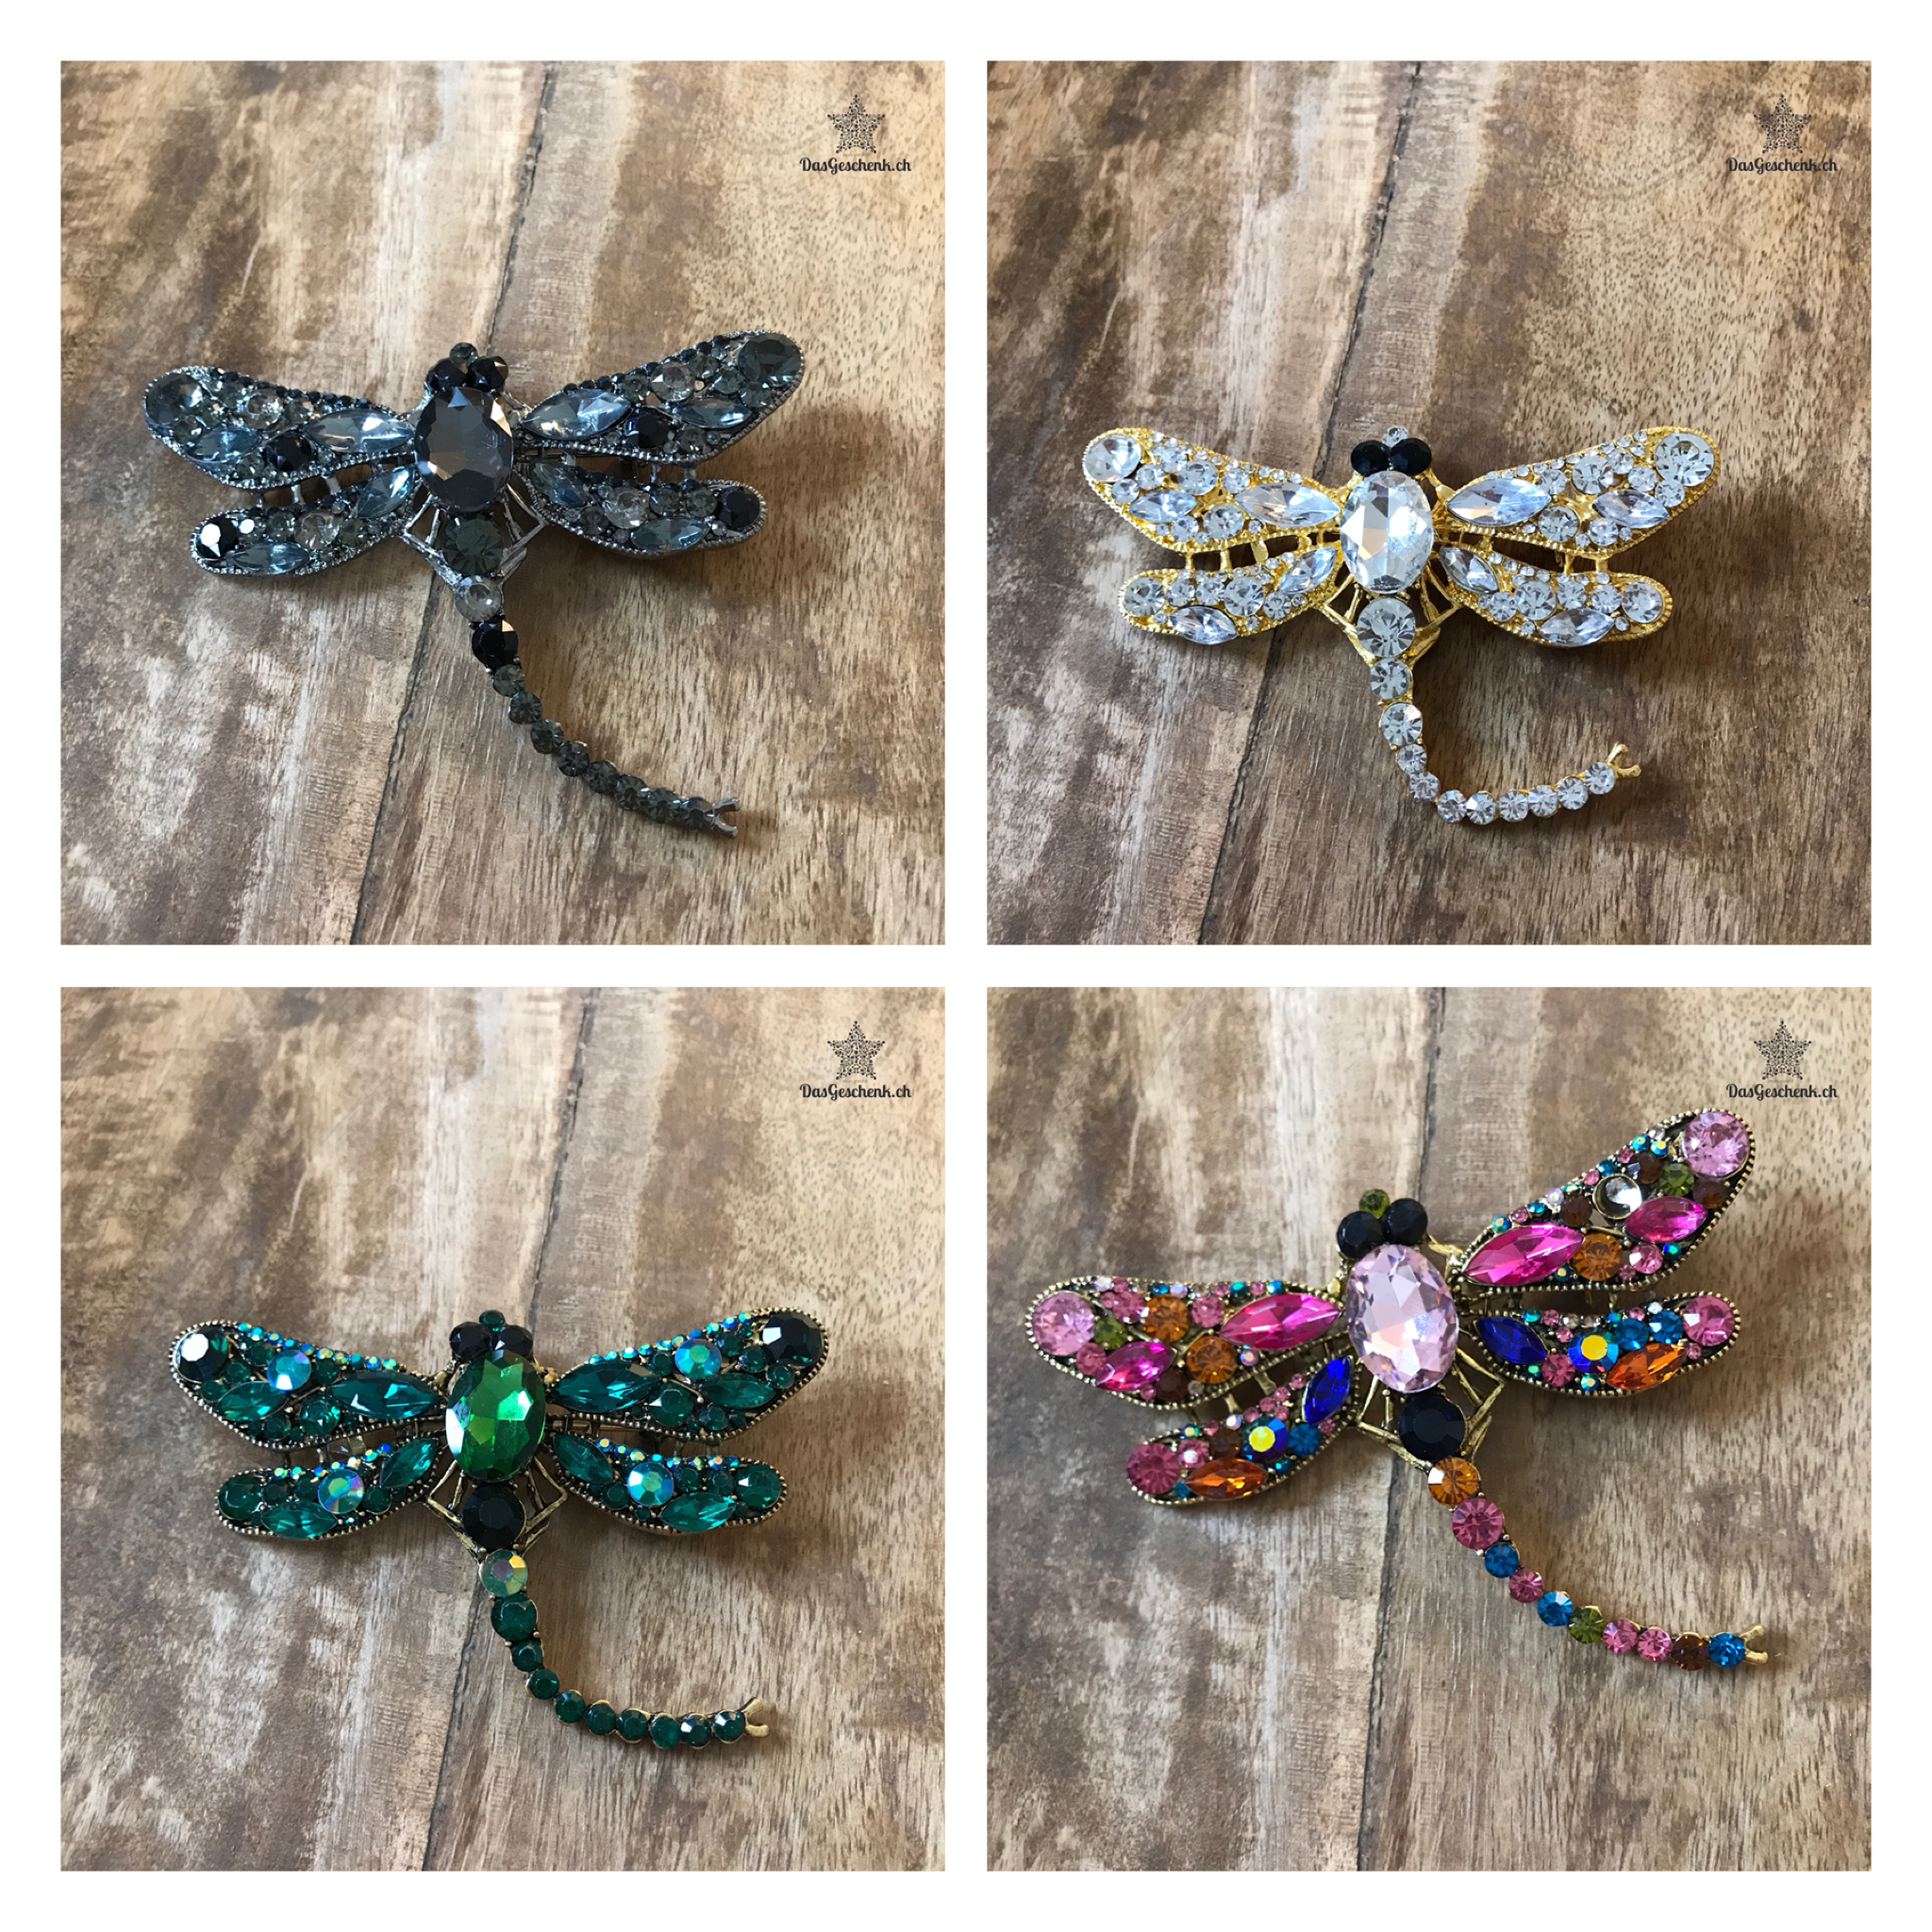 Wunderschöne Libellen Brosche in 6 Farben erhältlich